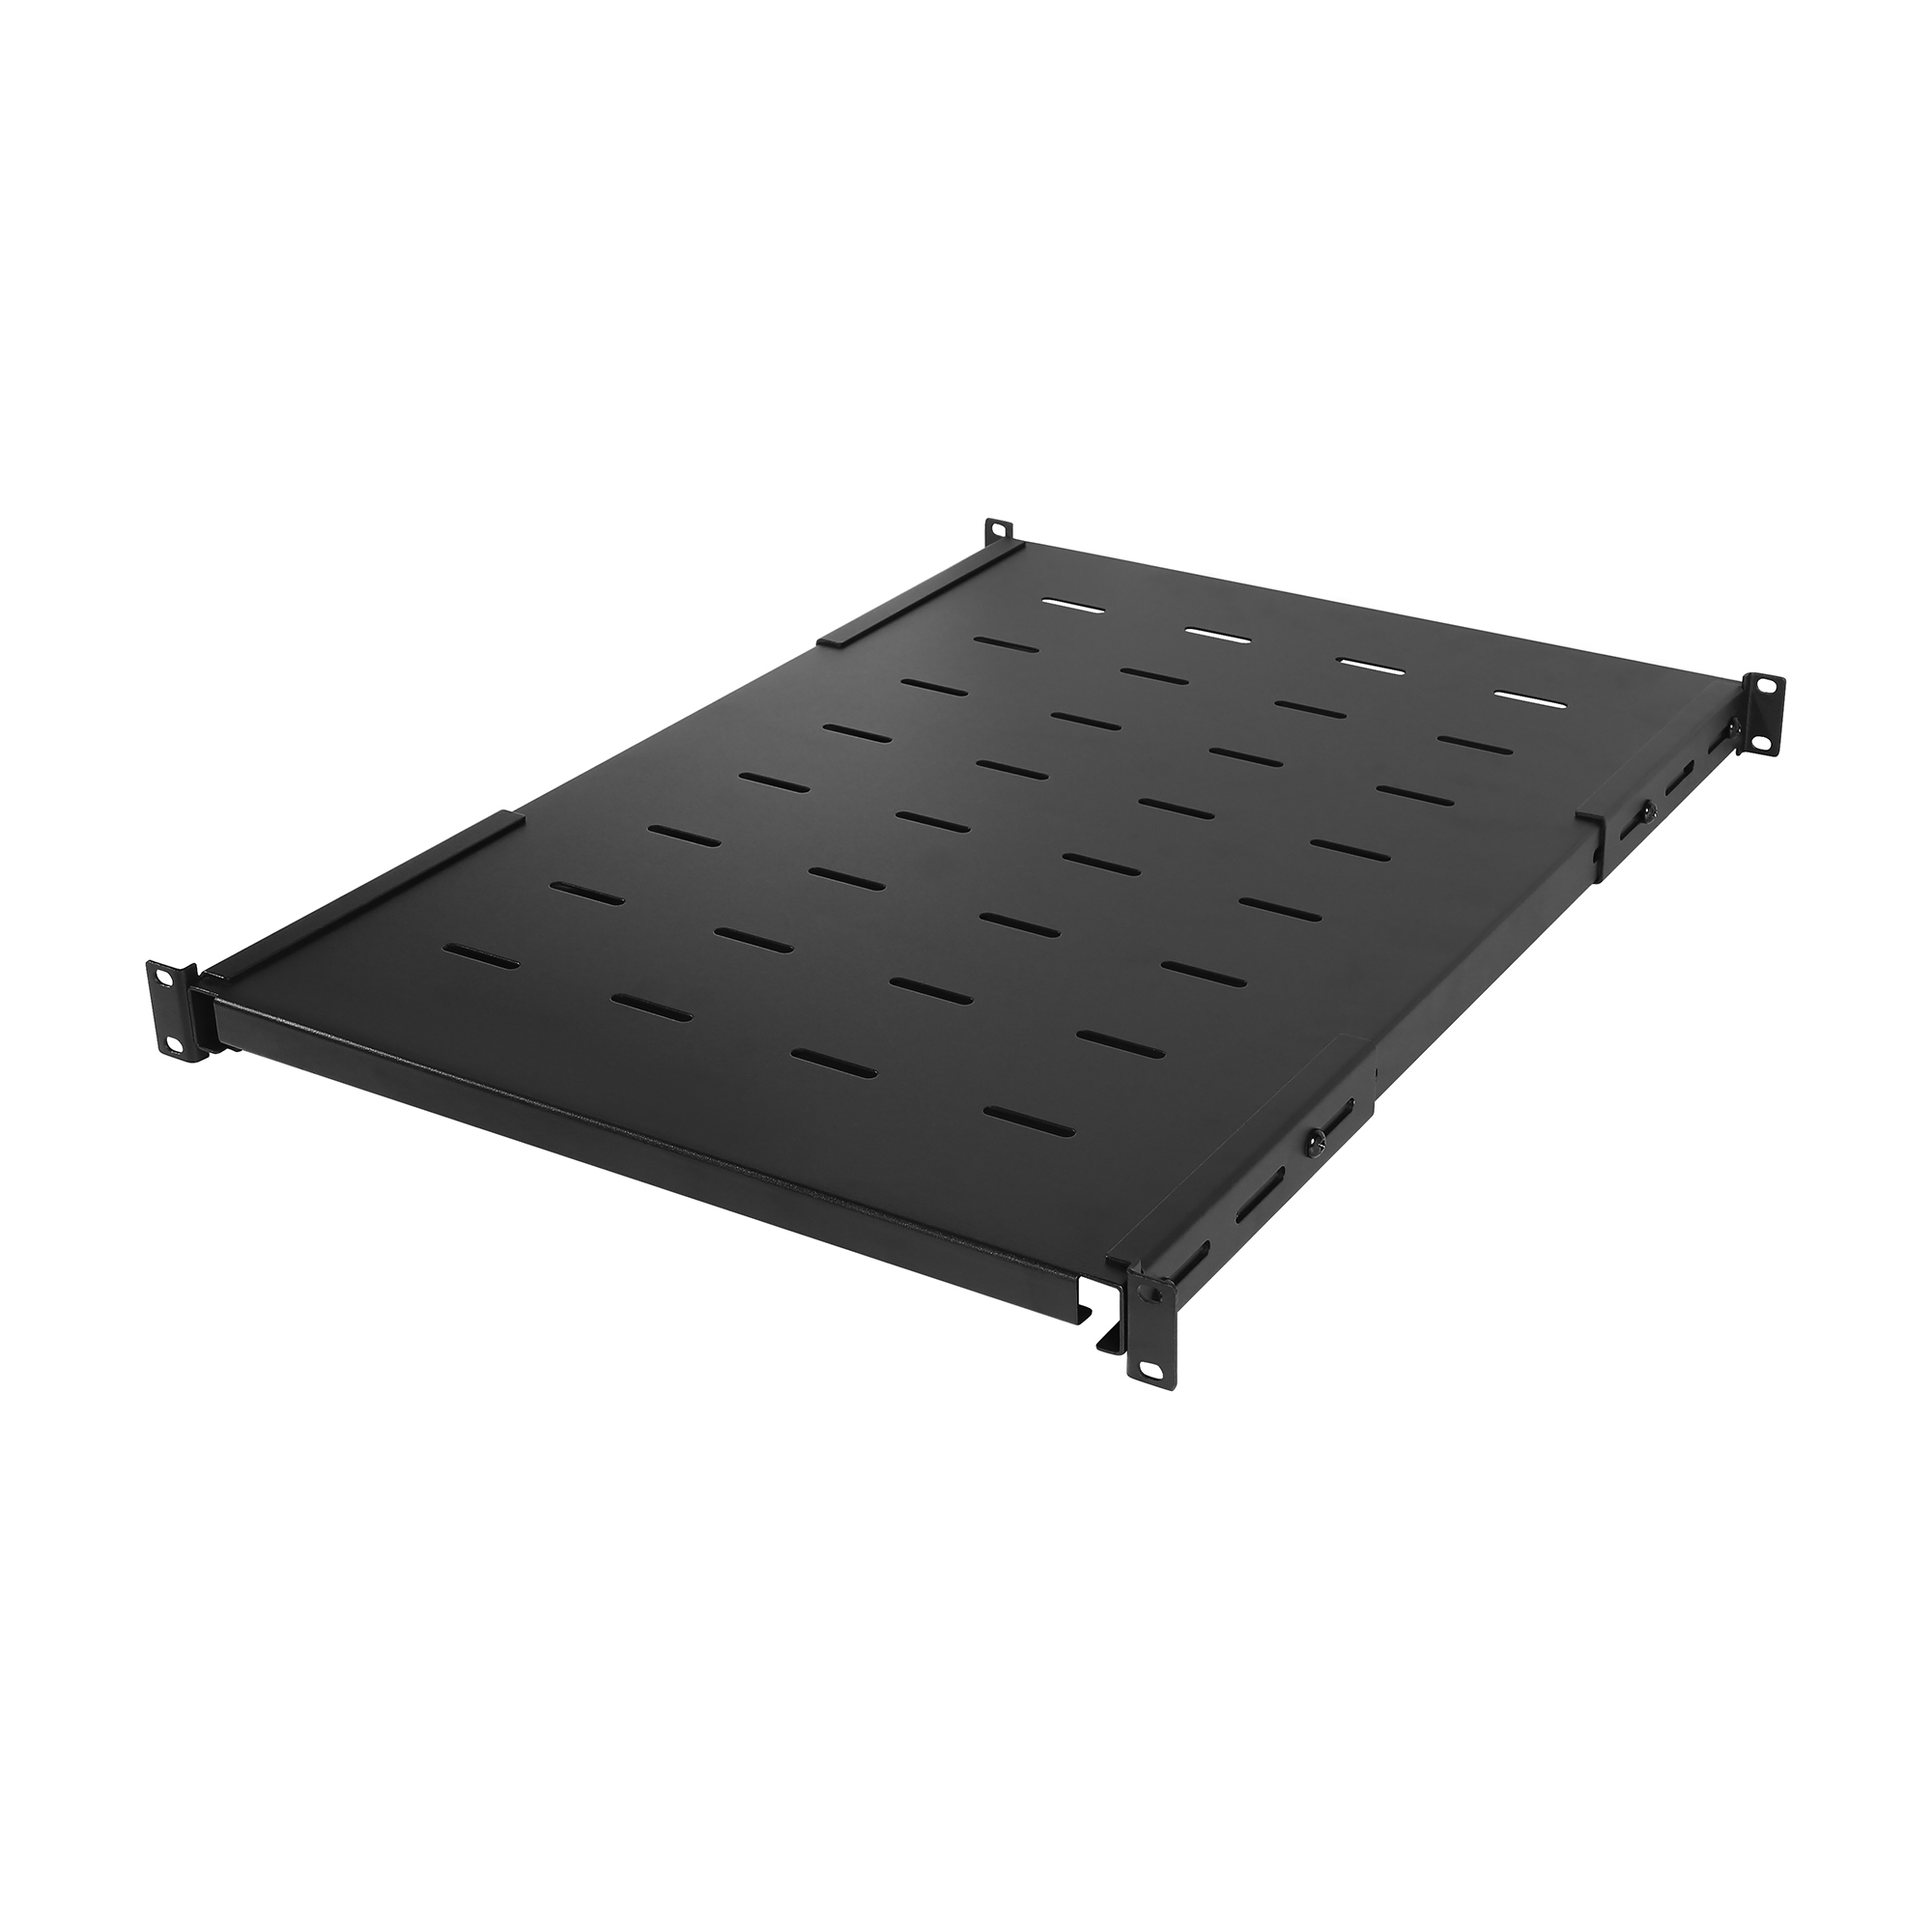 CRA50005 - Carbon™ Rack Shelves - Product Details, Specs